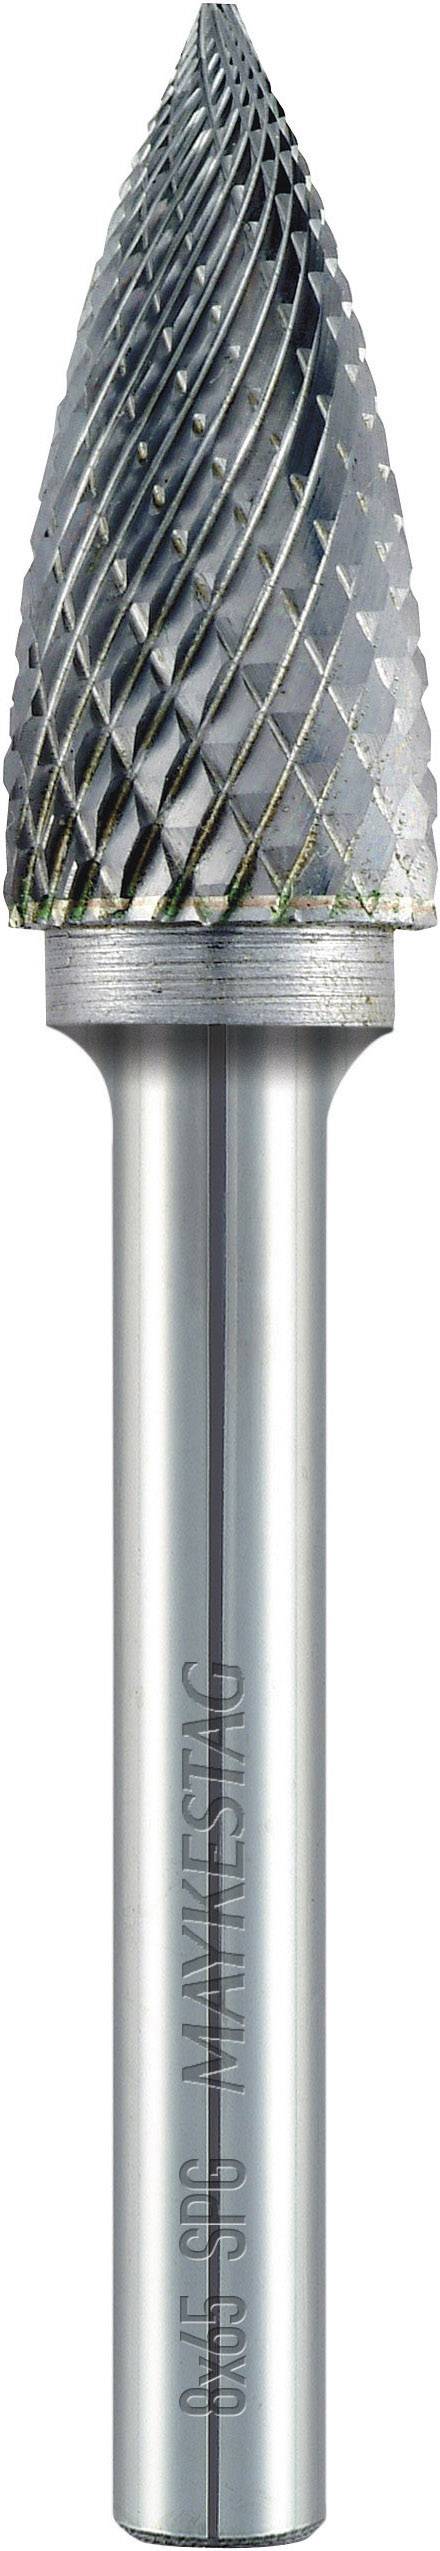 ALPEN Frässtift 6 mm Form G Spitzbogen (SPG) Alpen 780606106100 Hartmetall Schaft-Ø 6 mm